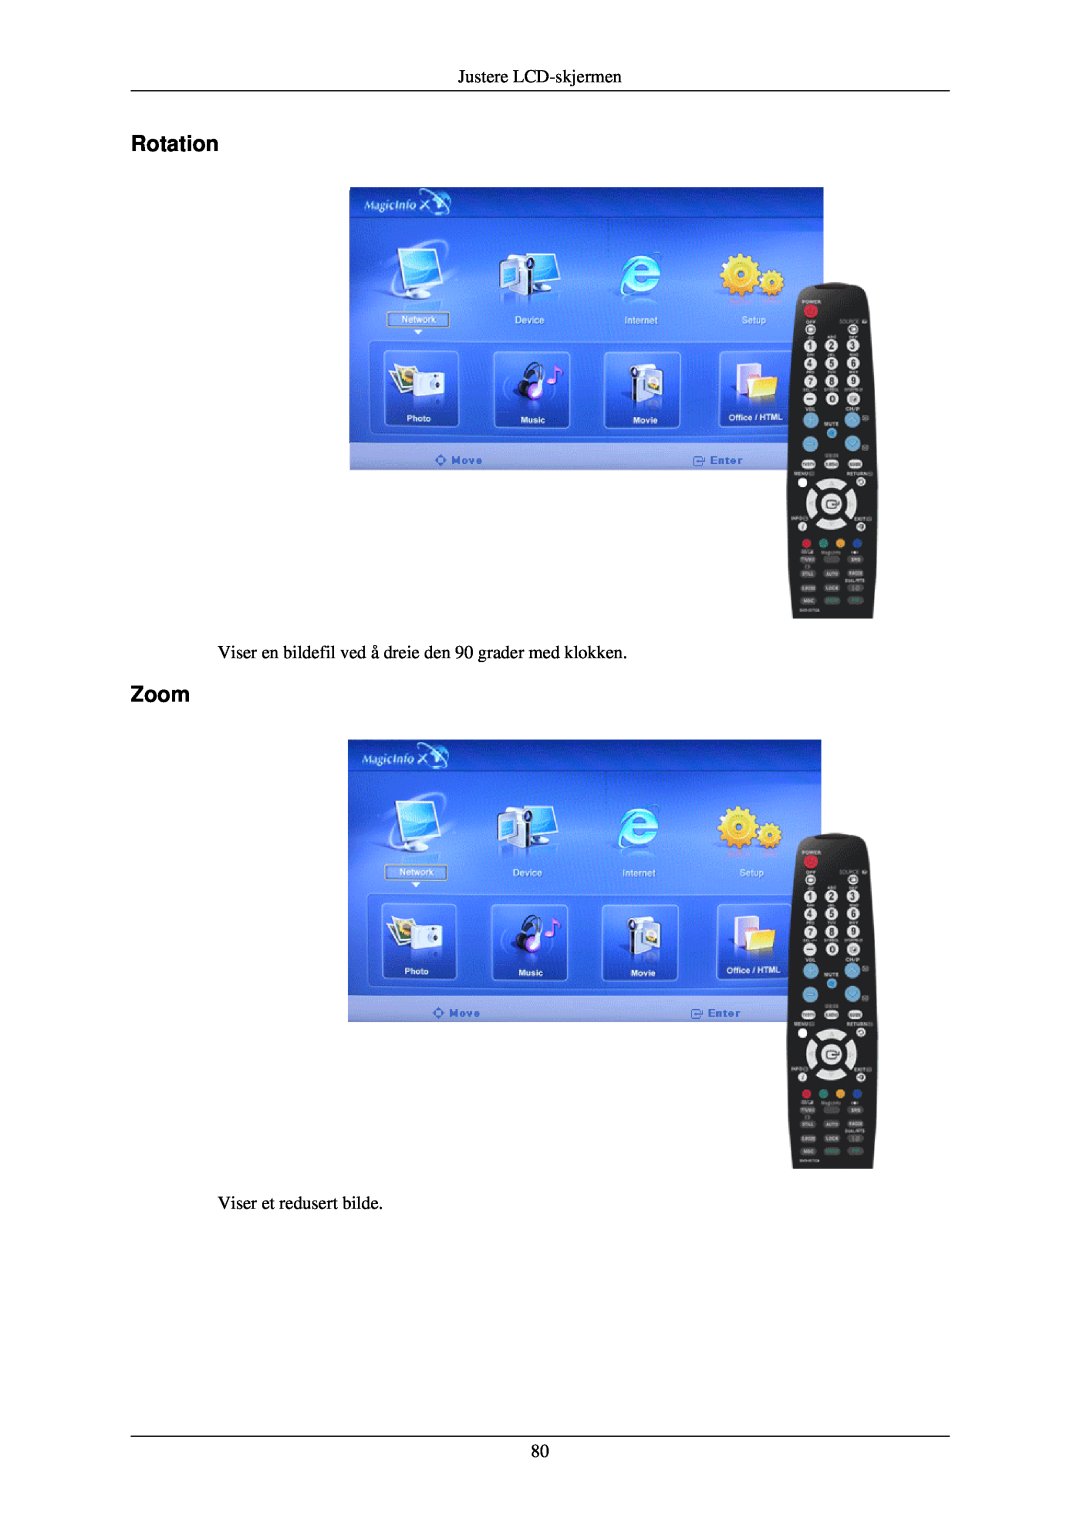 Samsung LH40TCUMBG/EN manual Rotation, Zoom, Justere LCD-skjermen, Viser en bildefil ved å dreie den 90 grader med klokken 